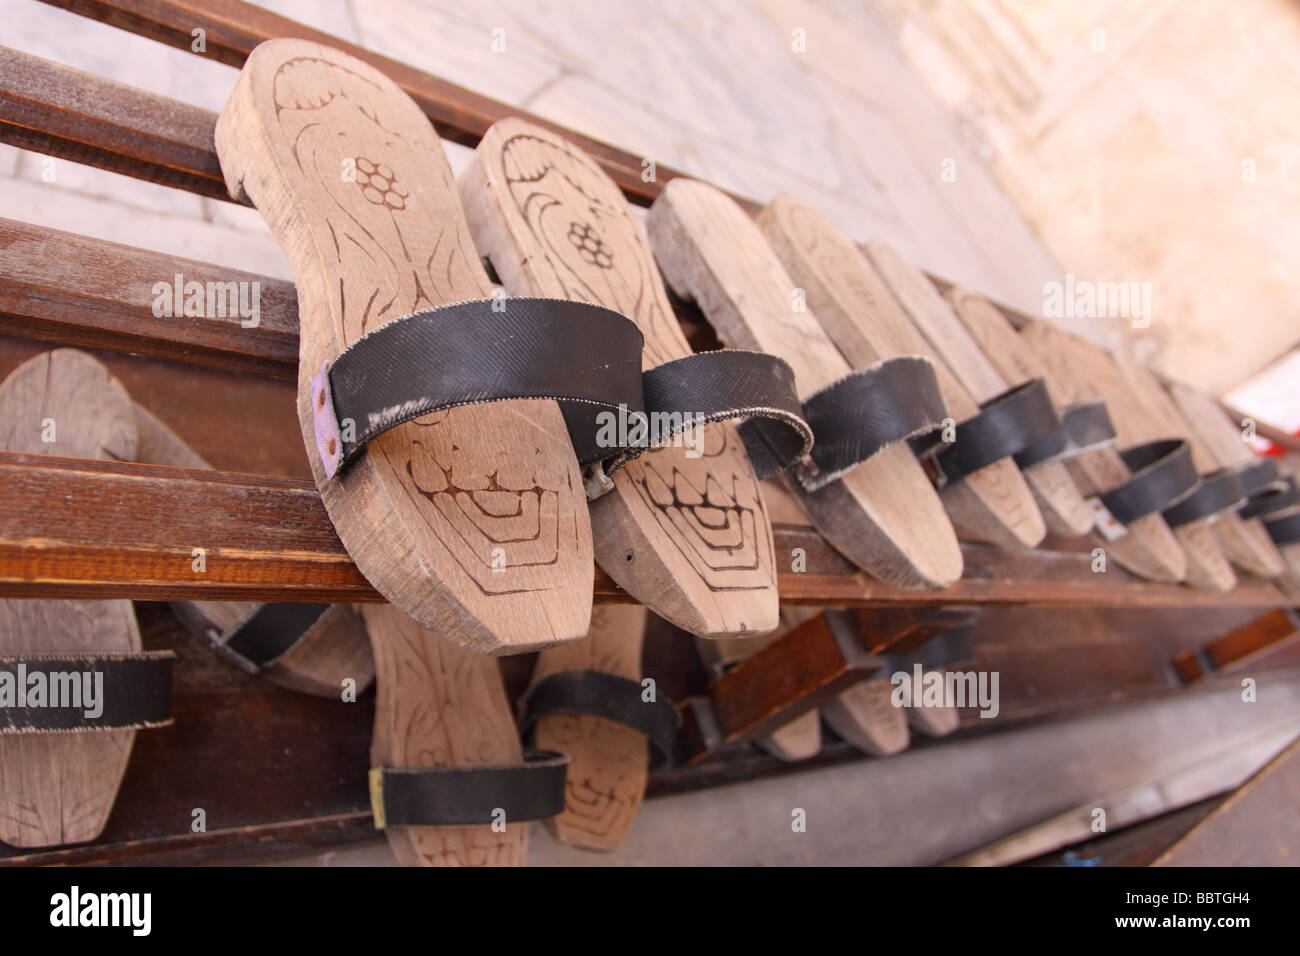 Istanbul Turchia sandels in legno fuori l'ingresso ad una moschea Foto Stock